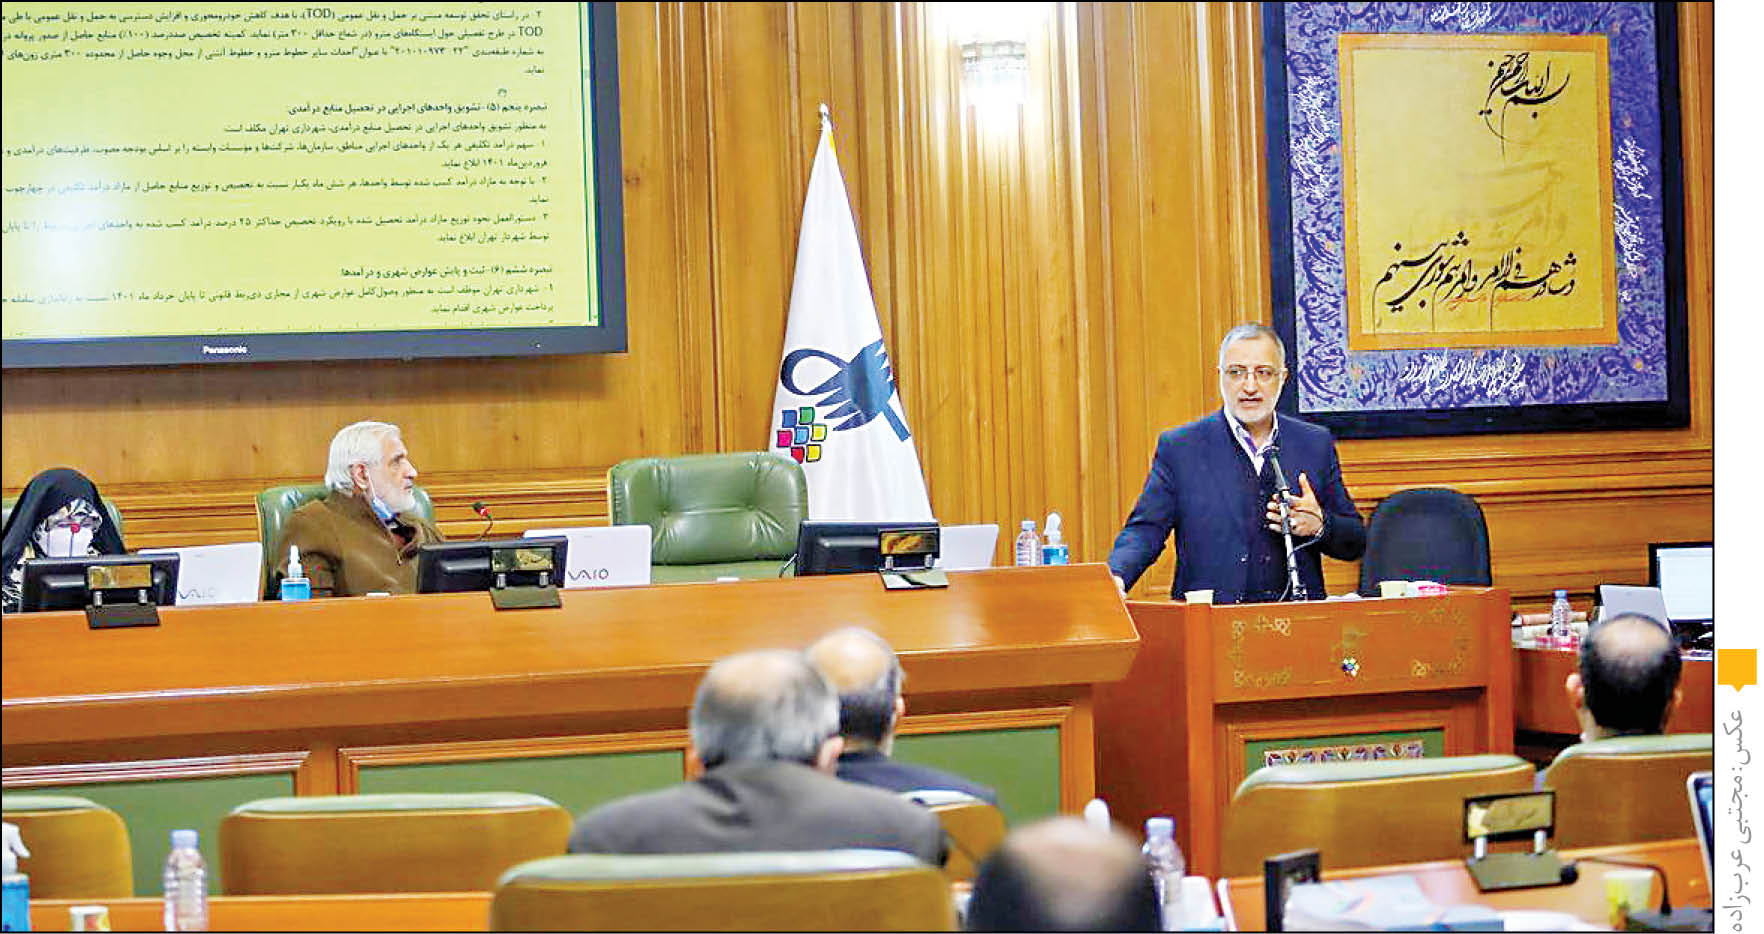 زاکانی در جلسه شورای شهر تهران در دفاع از ایجاد خزانه واحد اعلام کرد